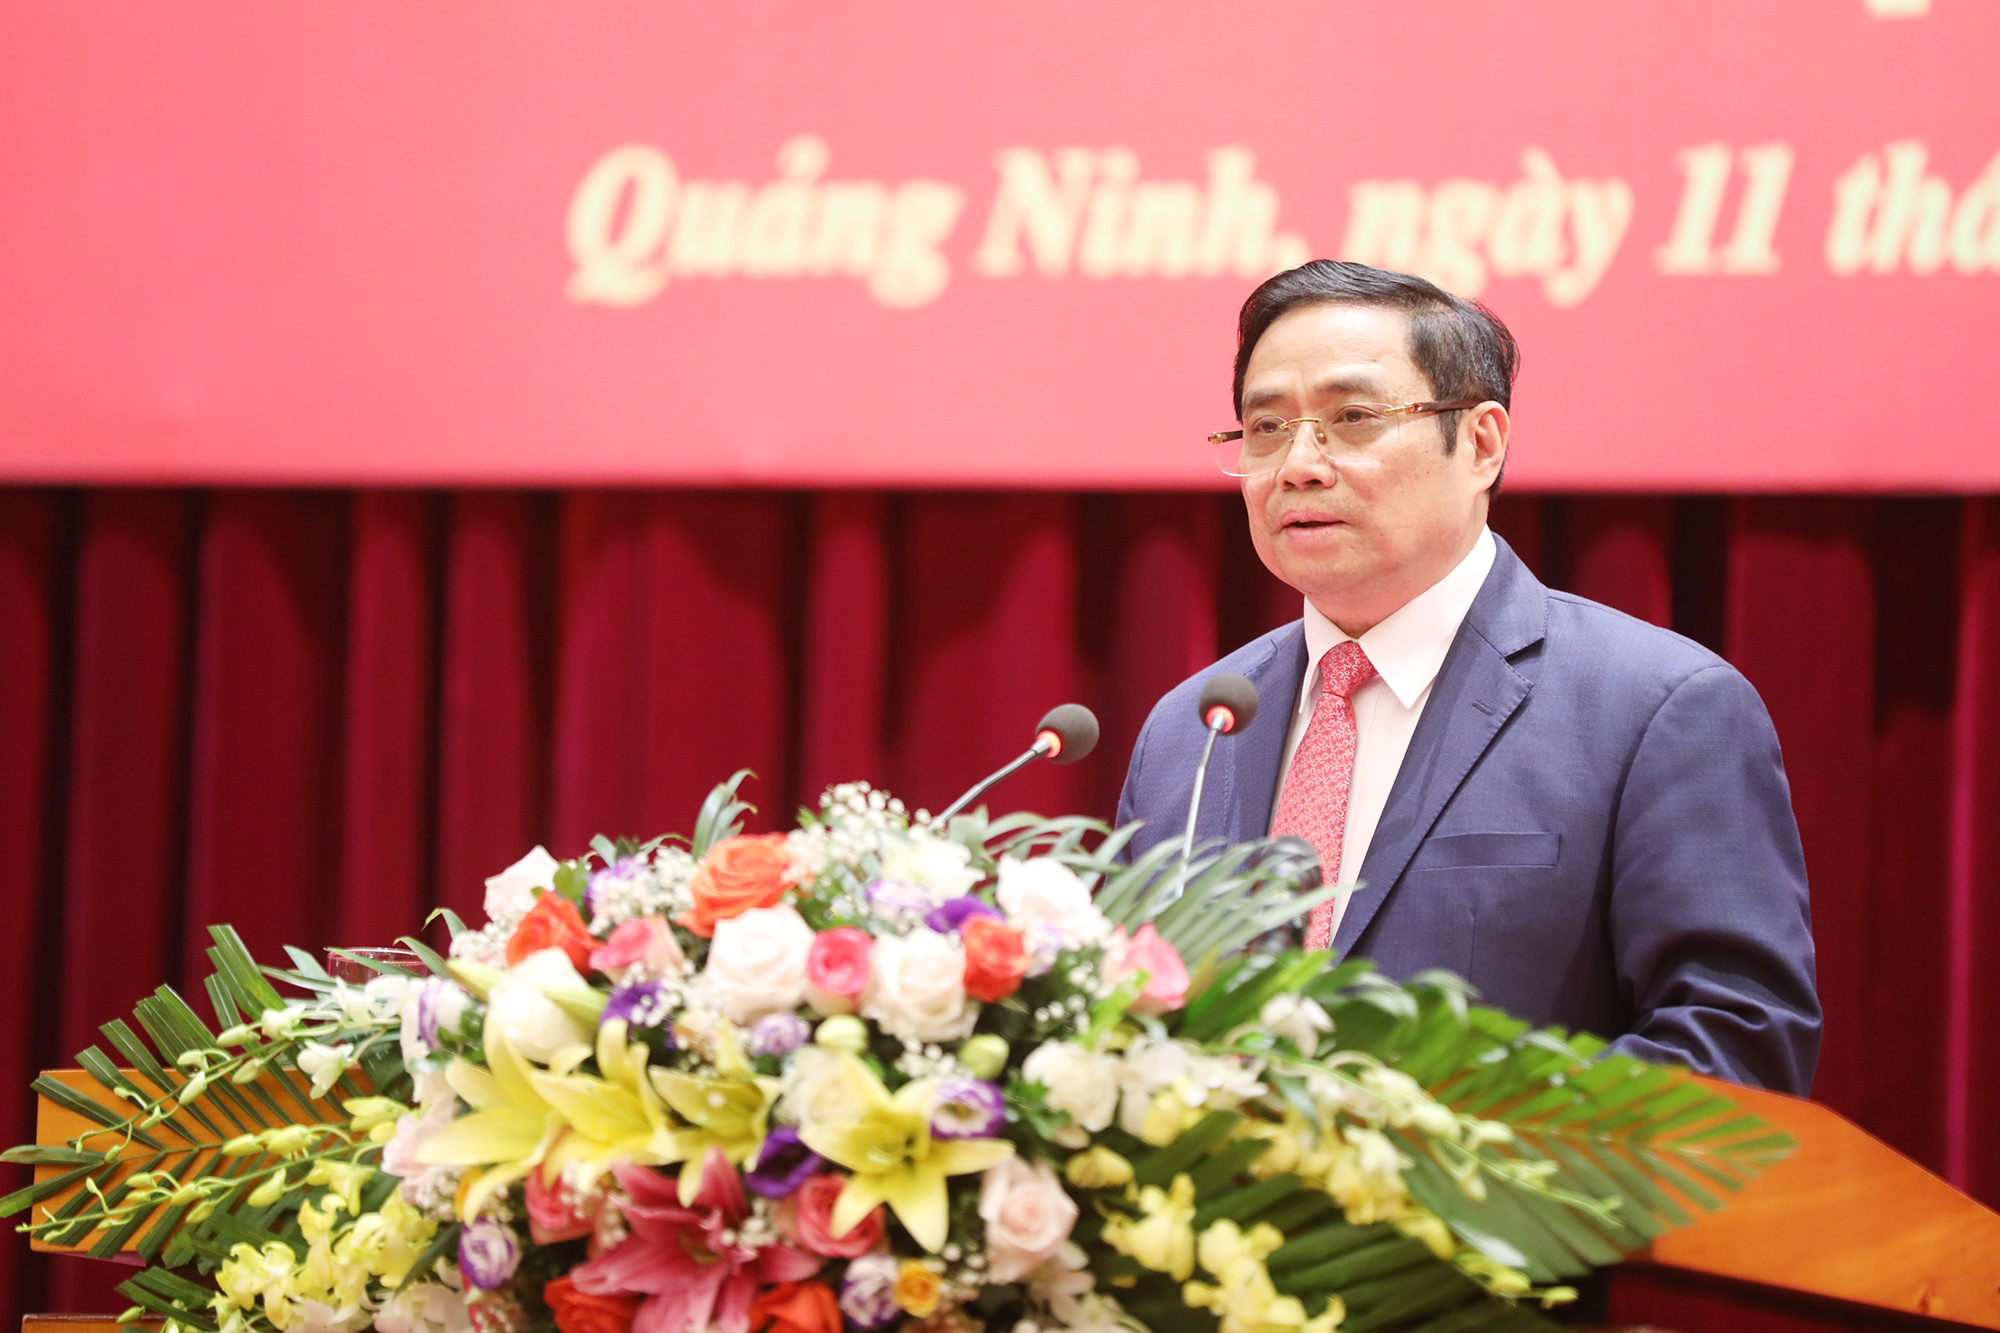 Phạm Minh Chính, Ủy viên Bộ Chính trị, Bí thư Trung ương Đảng, Trưởng Ban Tổ chức Trung ương đã trao Quyết định của Bộ Chính trị 